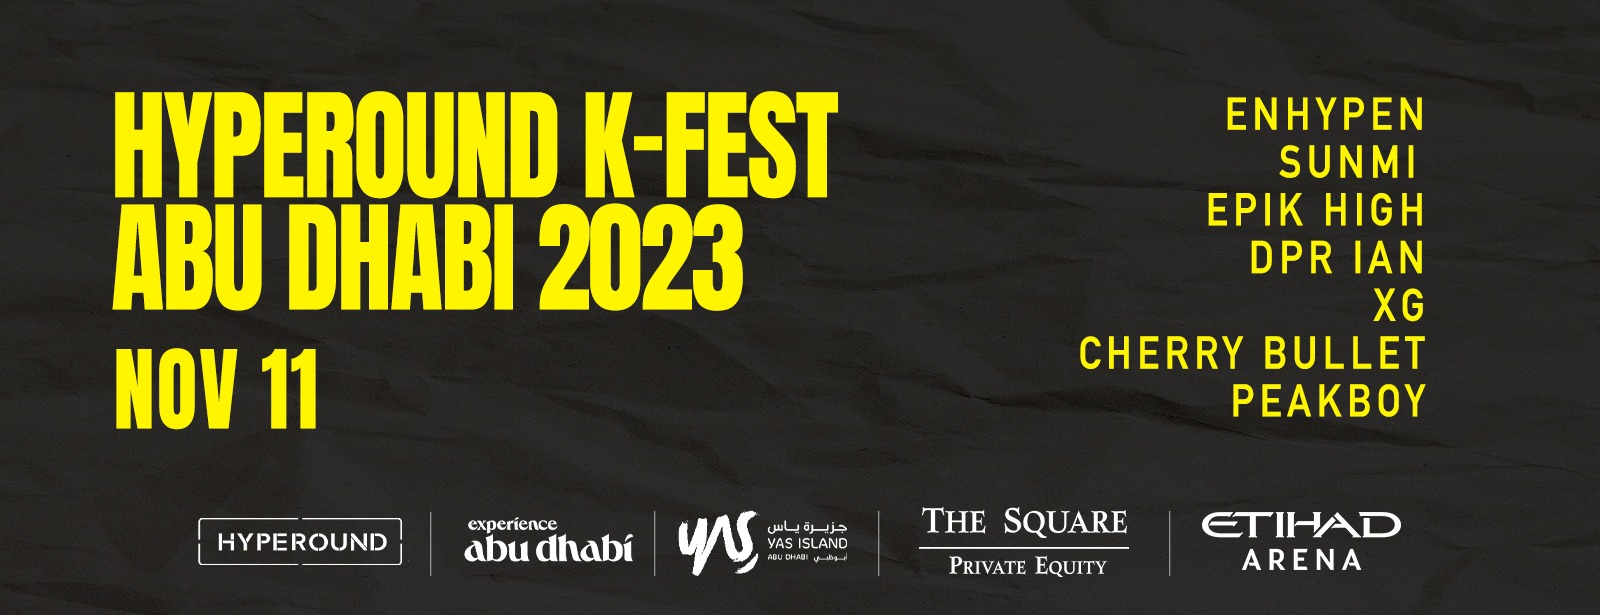 Hyperound K-Fest in Abu Dhabi - Coming Soon in UAE